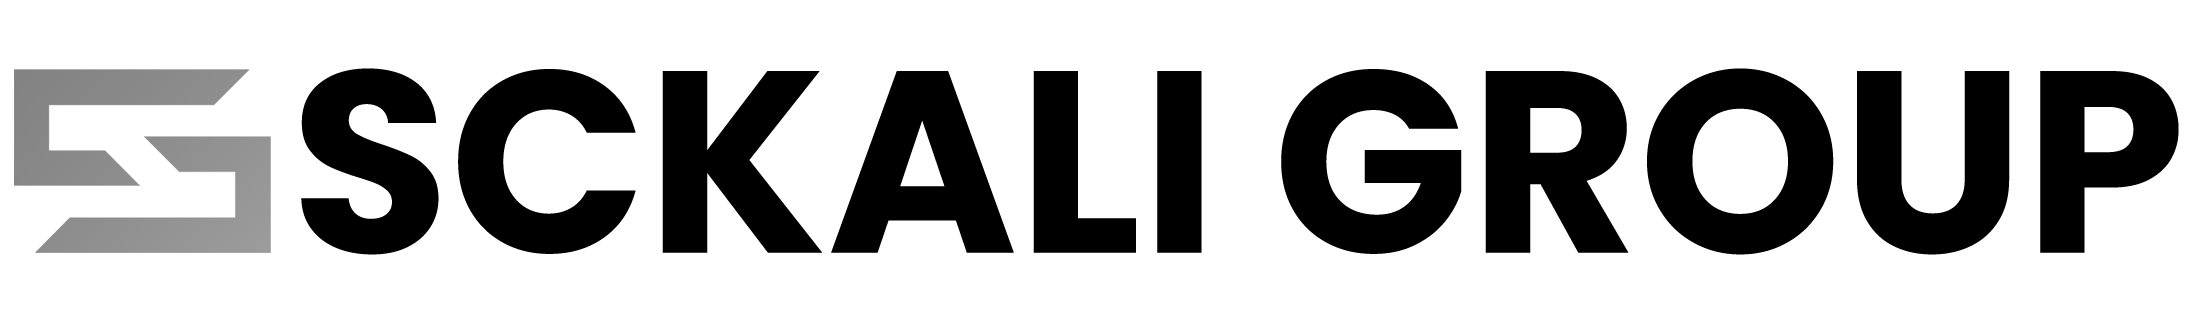 sckali-logo